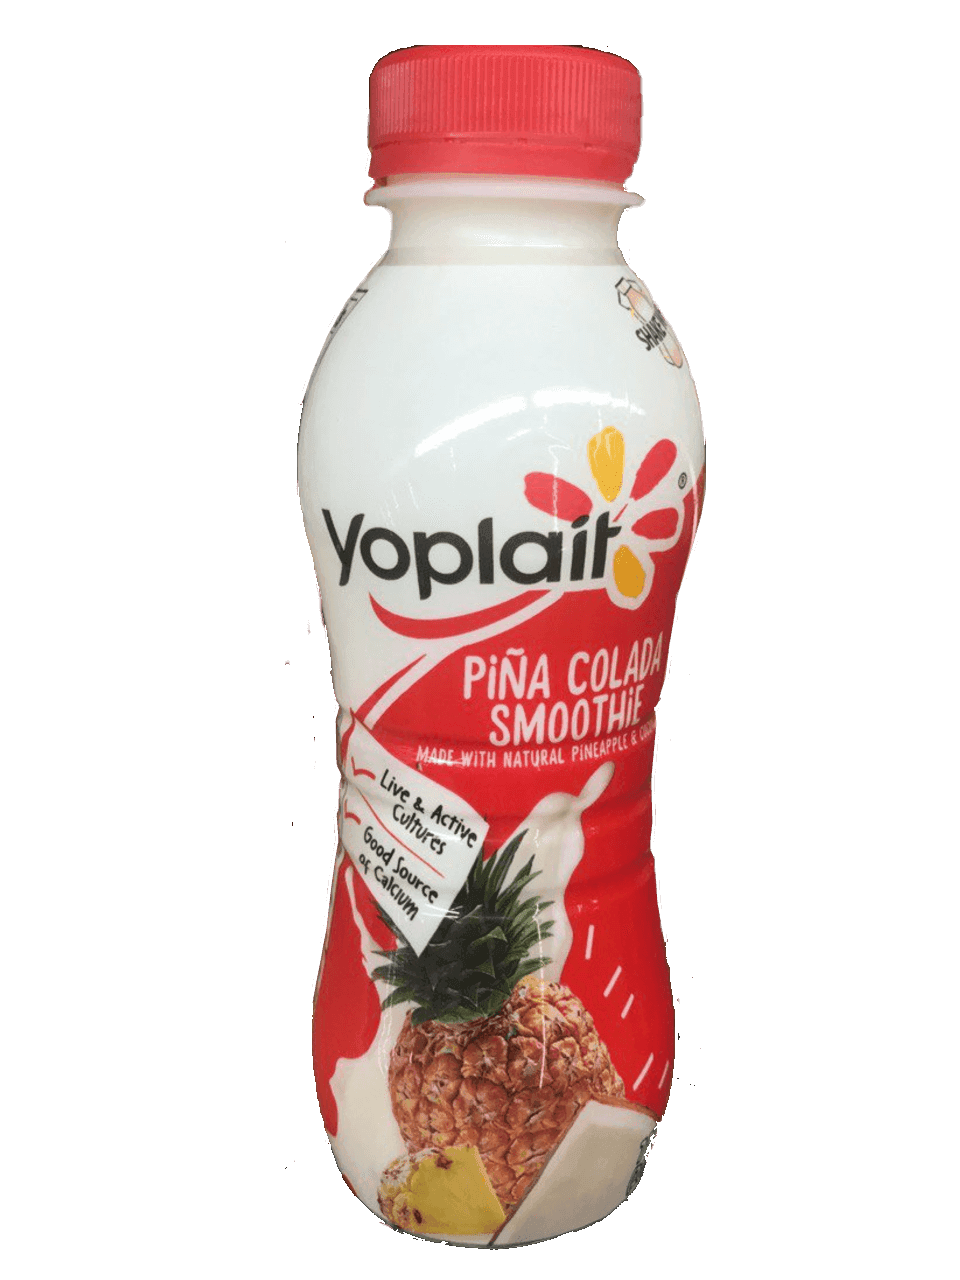 Yoplait - Pina Colada Smoothie 7oz